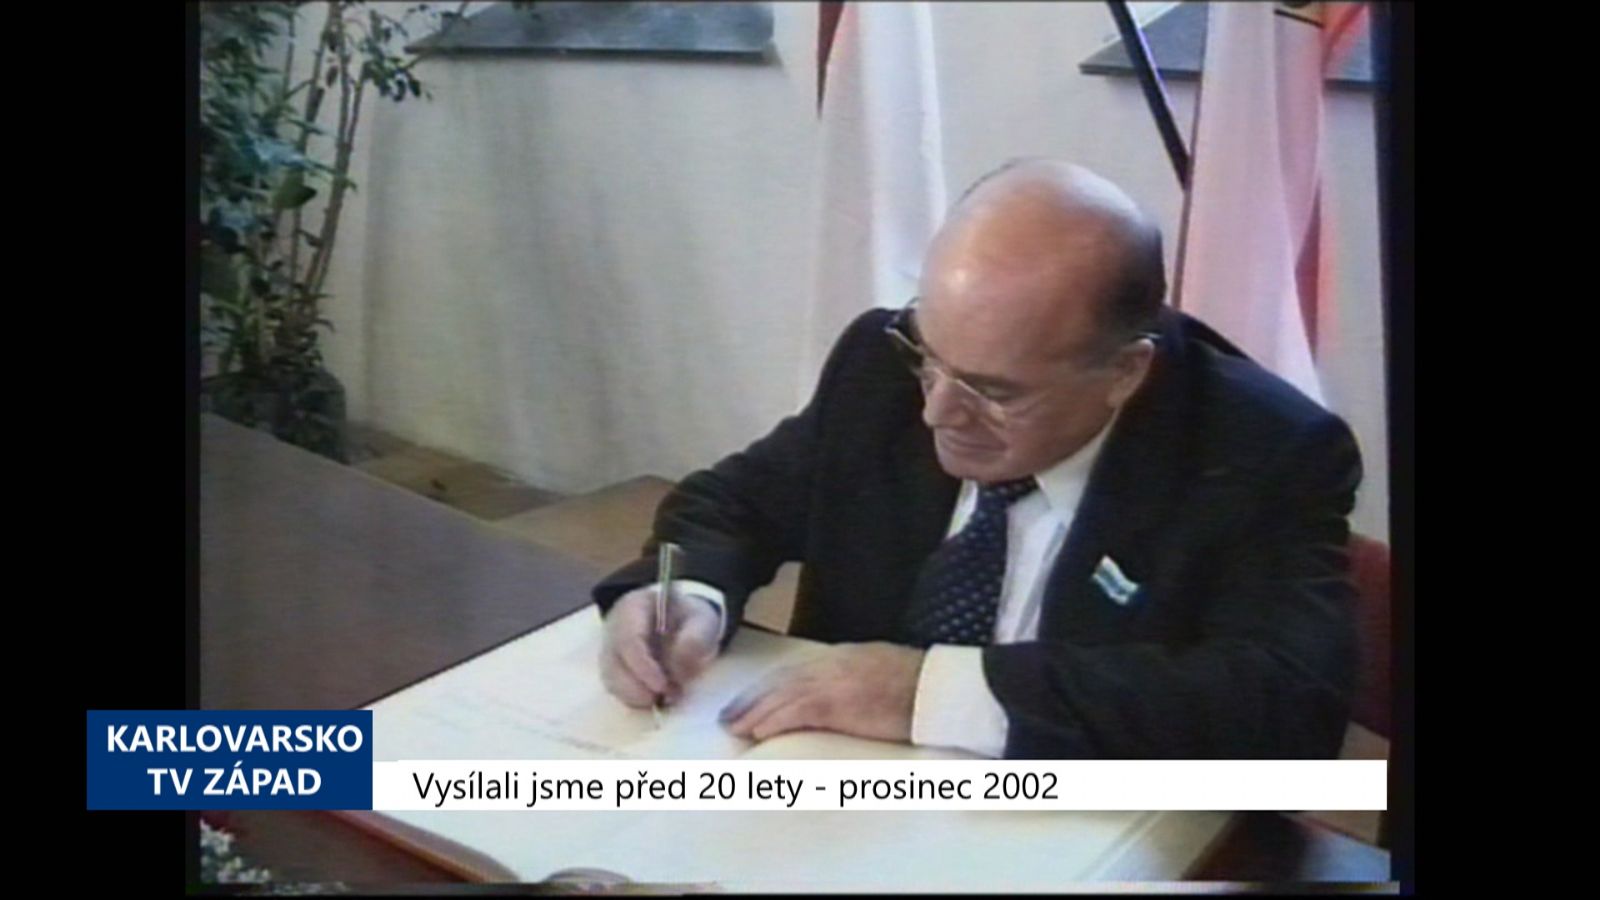 2002 – Cheb: Spolupráce s Nižním Tagilem by se měla rozšířit (TV Západ)